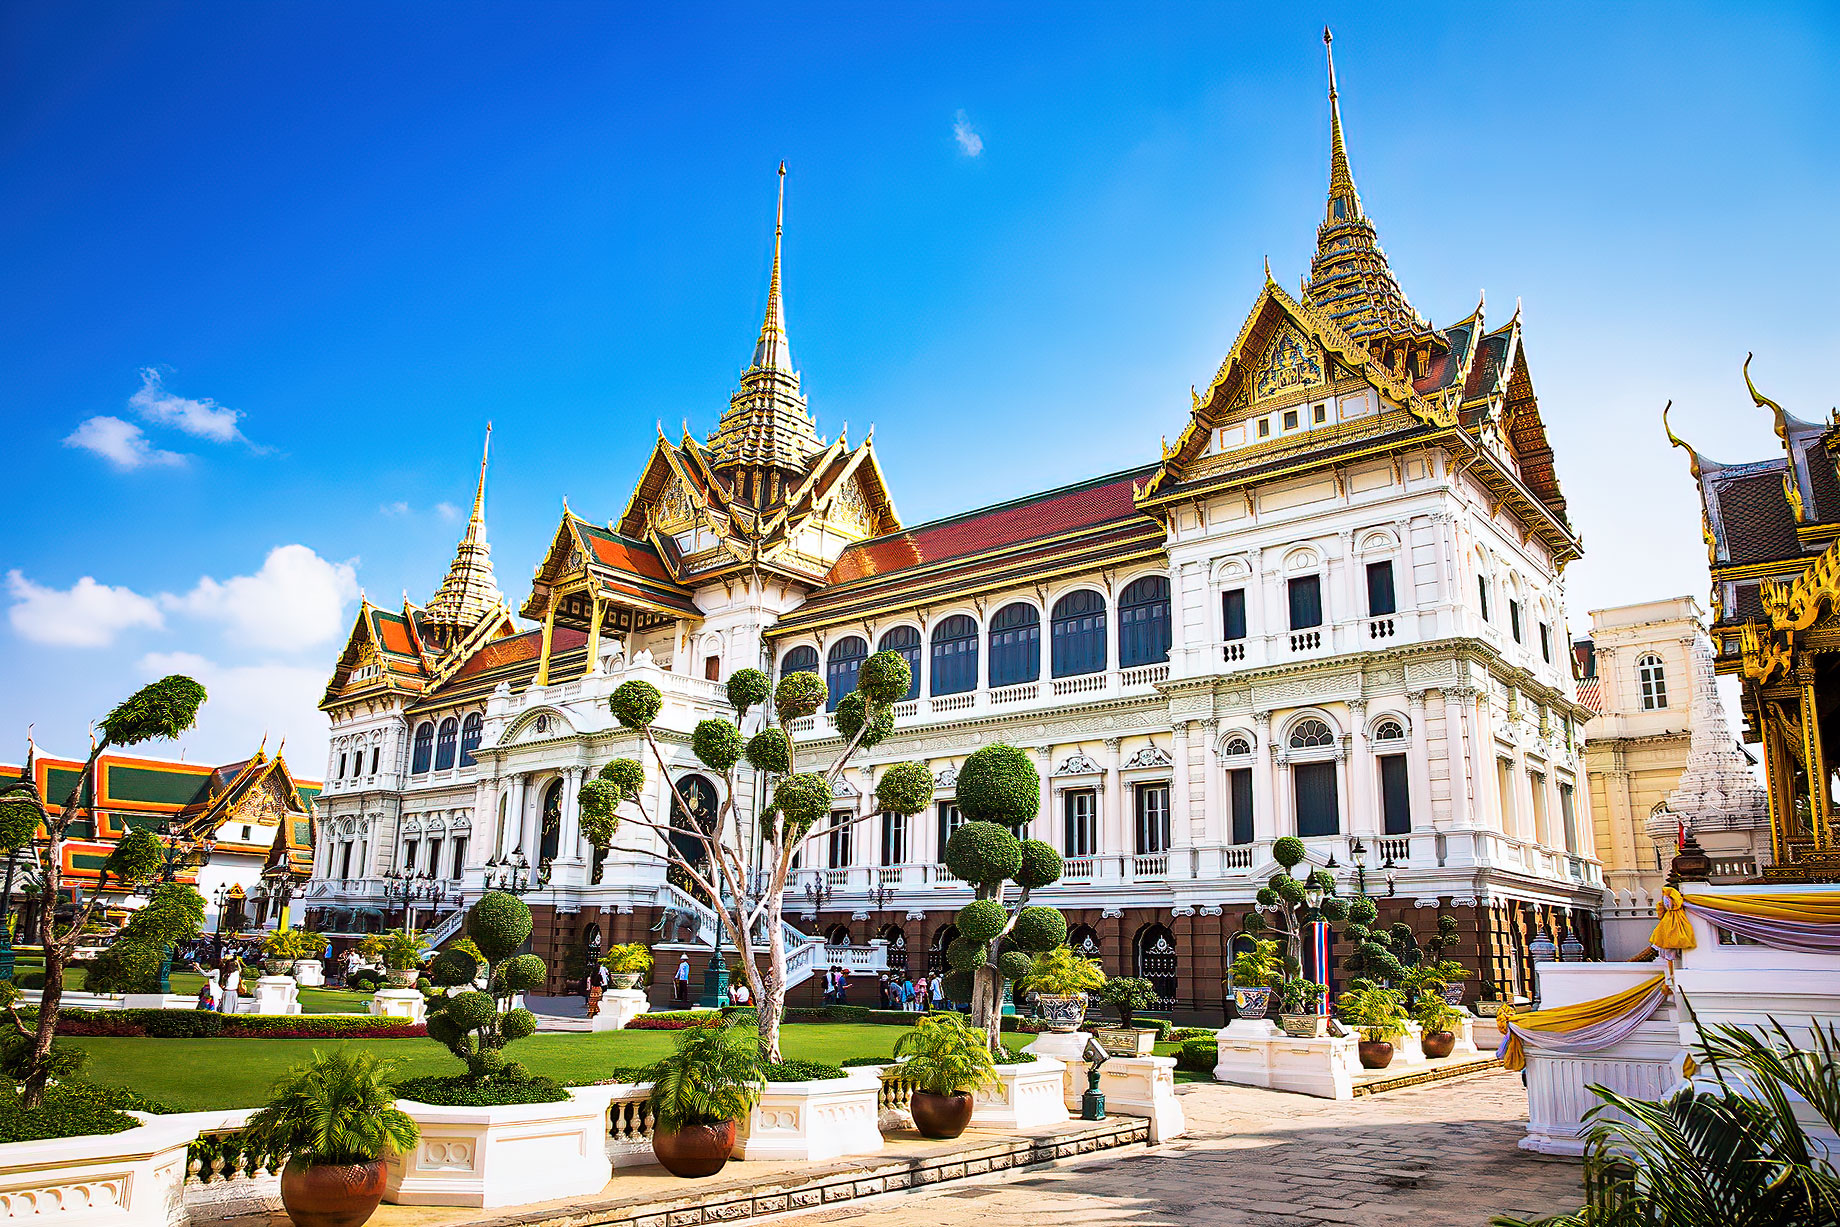 Grand Palace – Phra Nakhon, Bangkok, Thailand